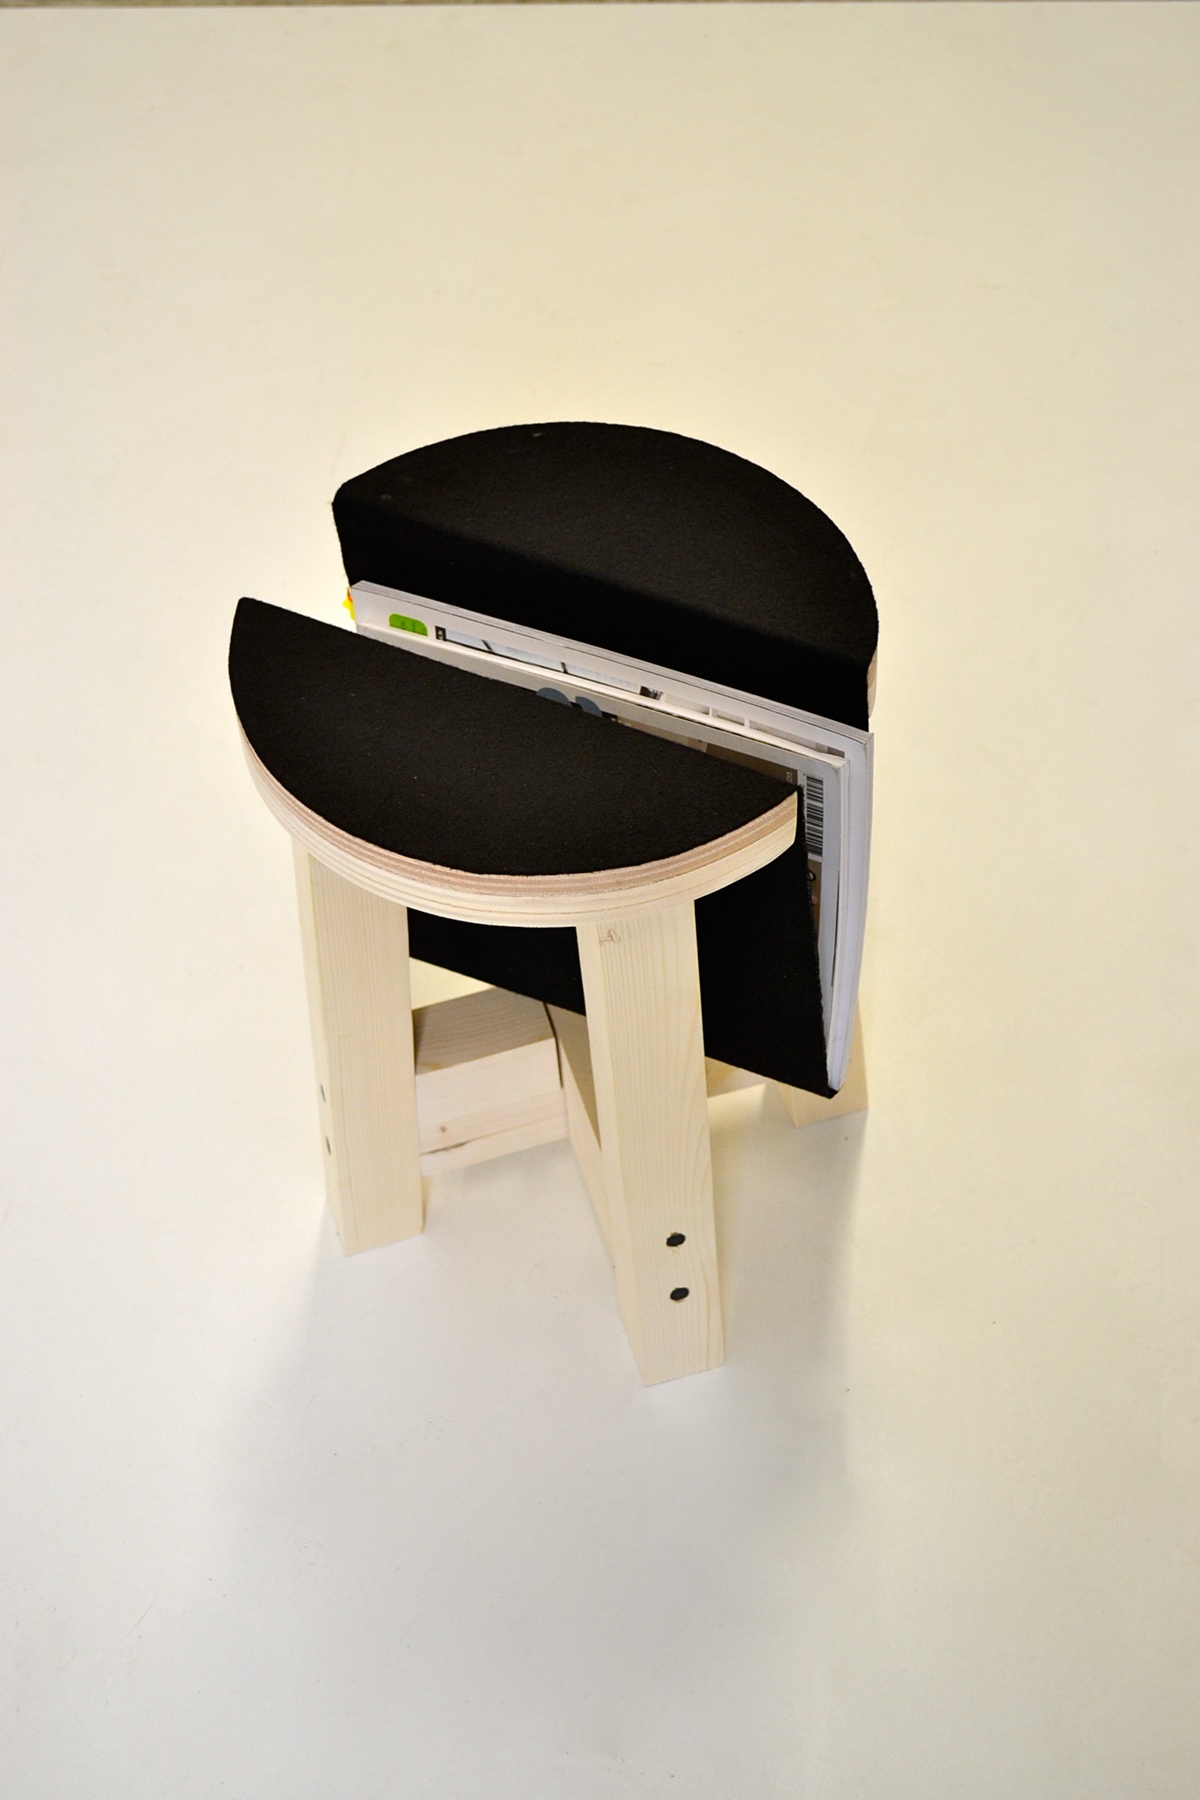 Conception feutrine  tabouret strasbourg université Hoffmann france mobilier V8 designer wood product furniture Lecerf stool design